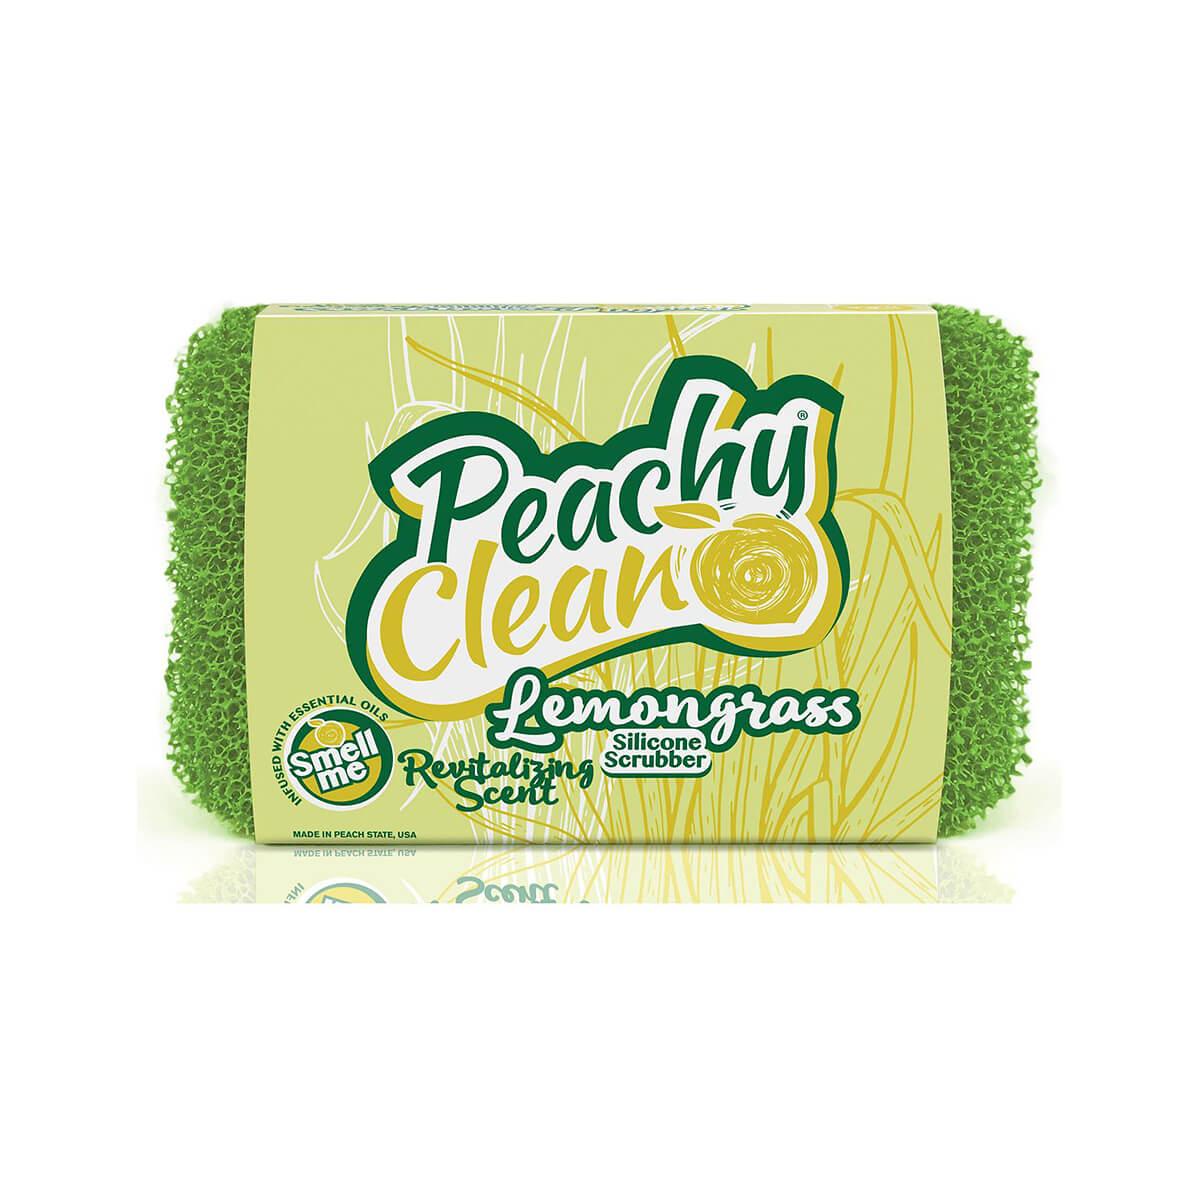 Peachy Clean Silicone Dish Scrubber - Lemongrass